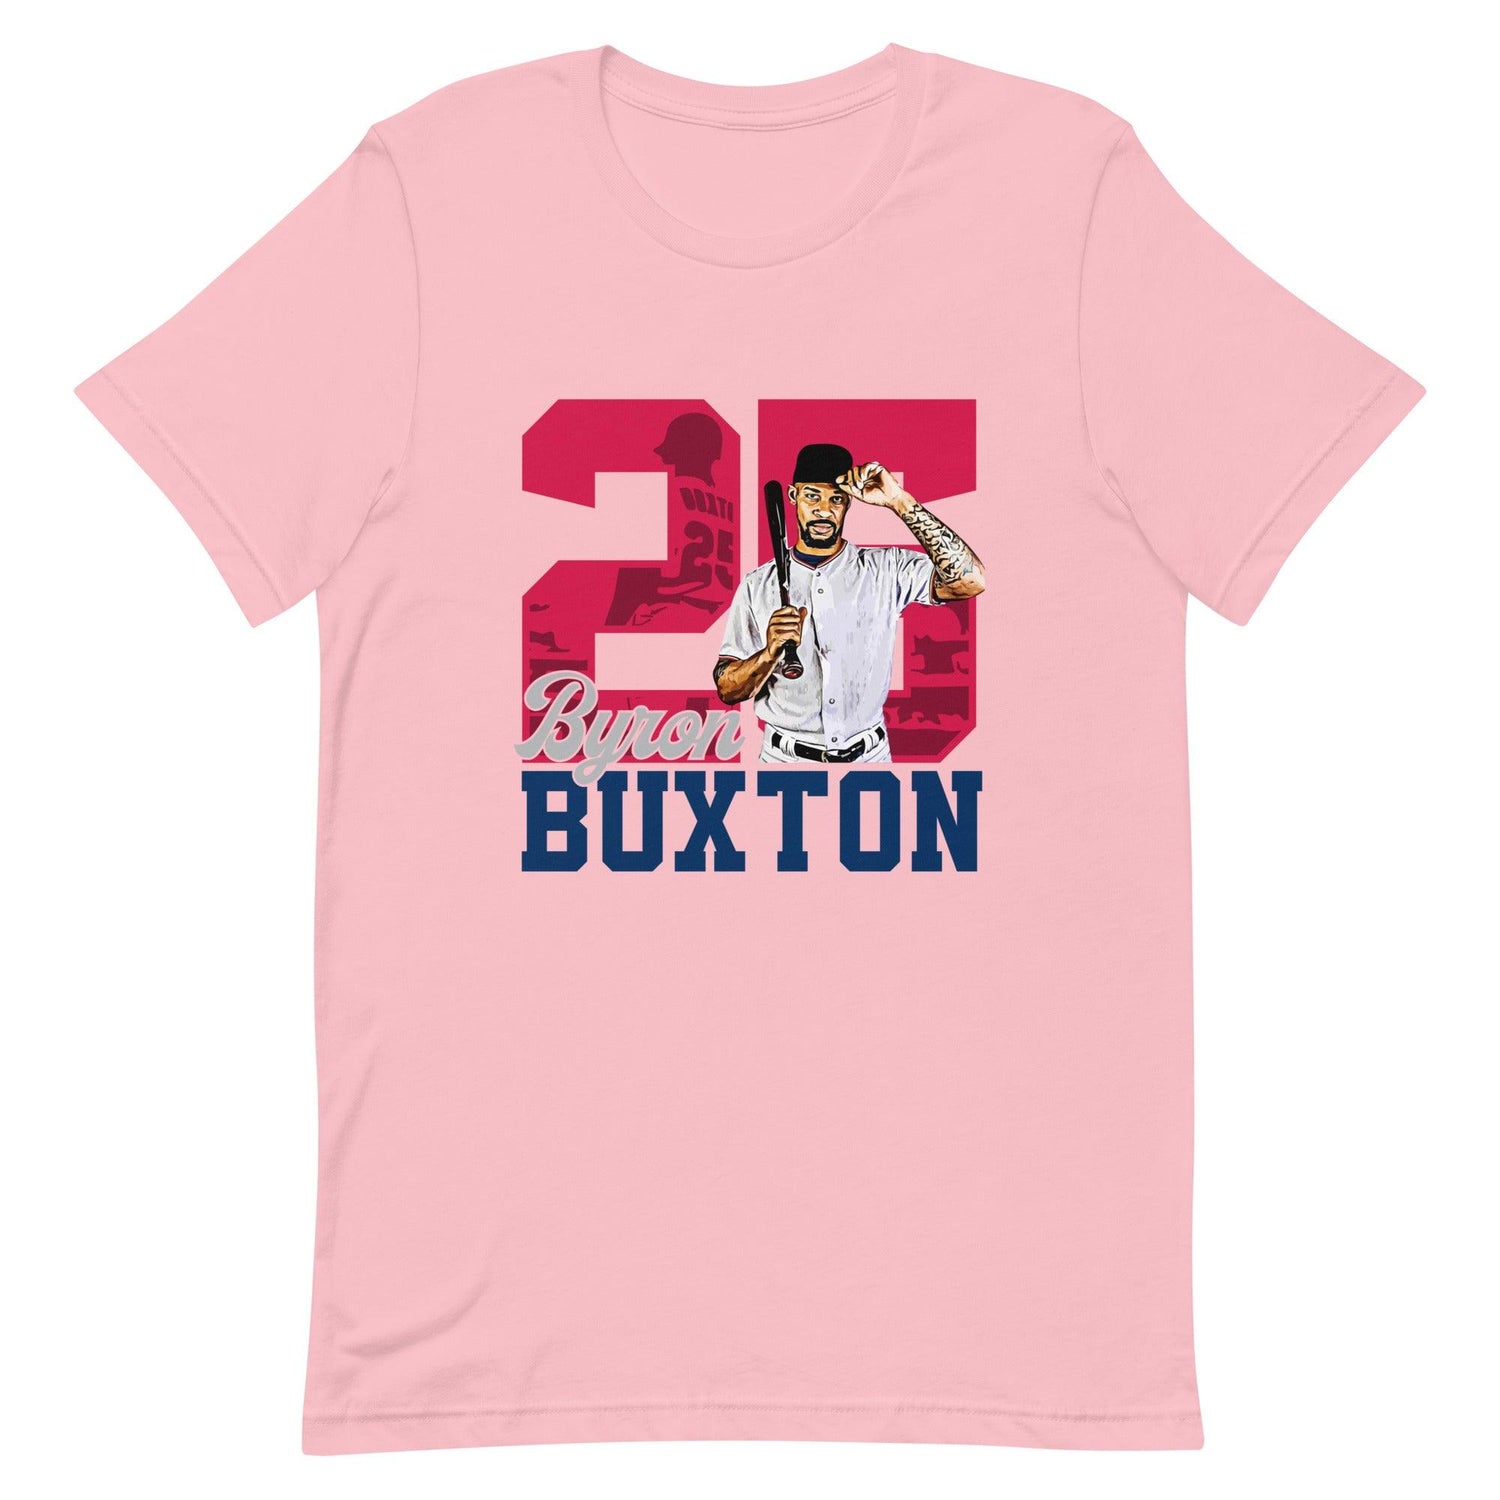 Byron Buxton "Legacy" t-shirt - Fan Arch